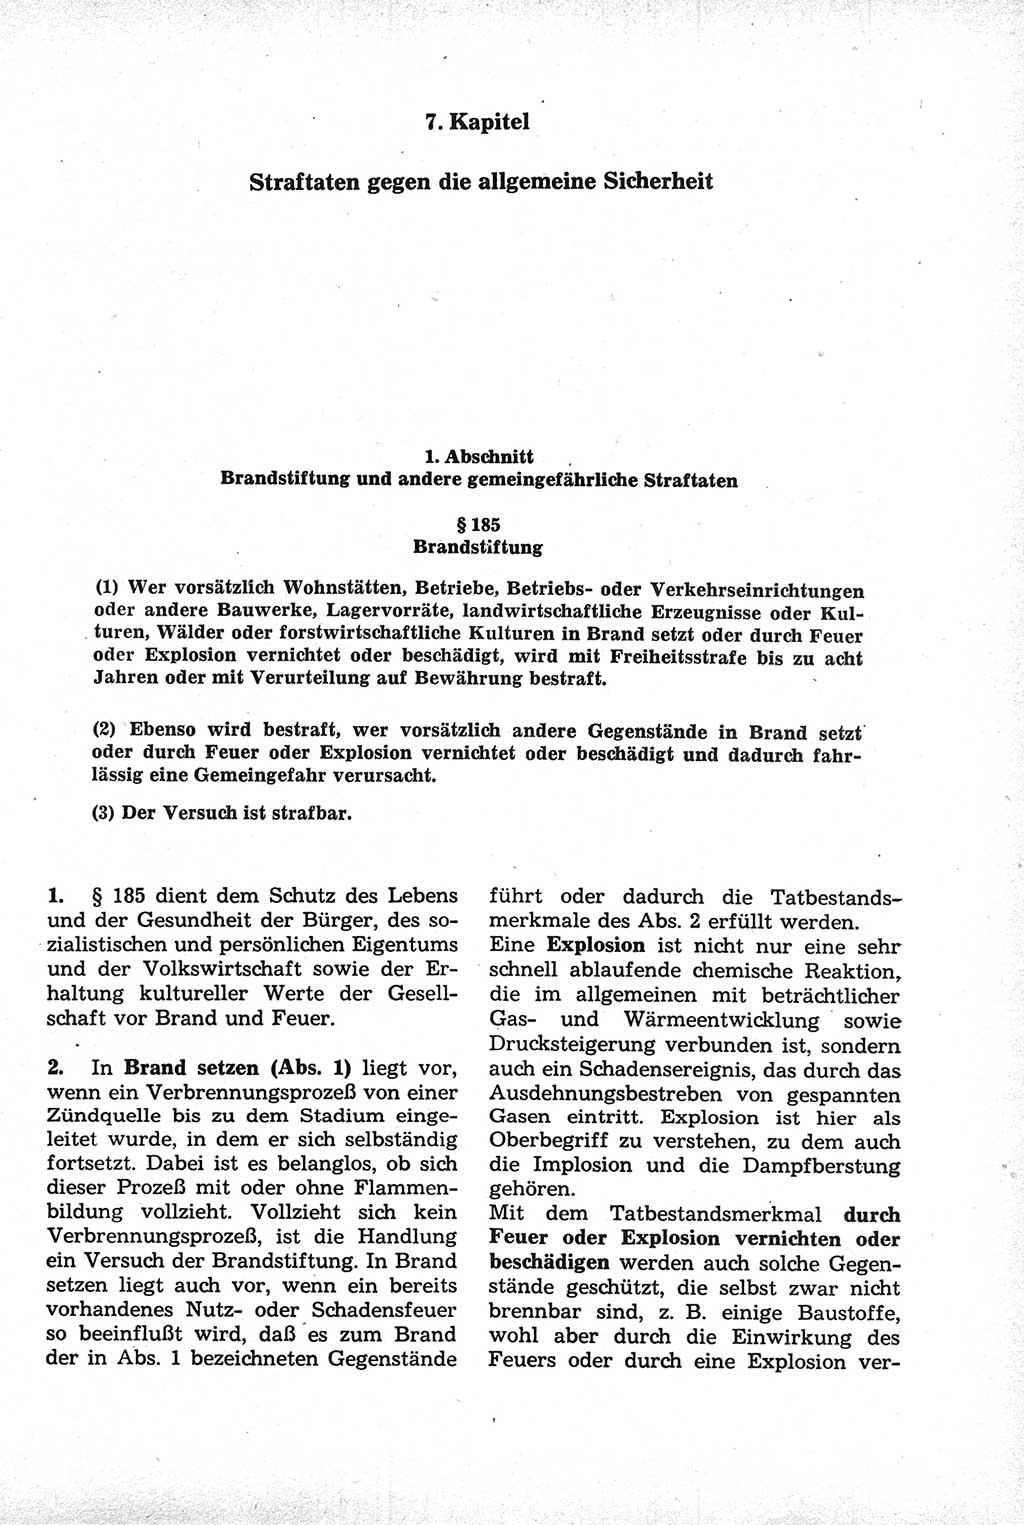 Strafrecht der Deutschen Demokratischen Republik (DDR), Kommentar zum Strafgesetzbuch (StGB) 1981, Seite 453 (Strafr. DDR Komm. StGB 1981, S. 453)